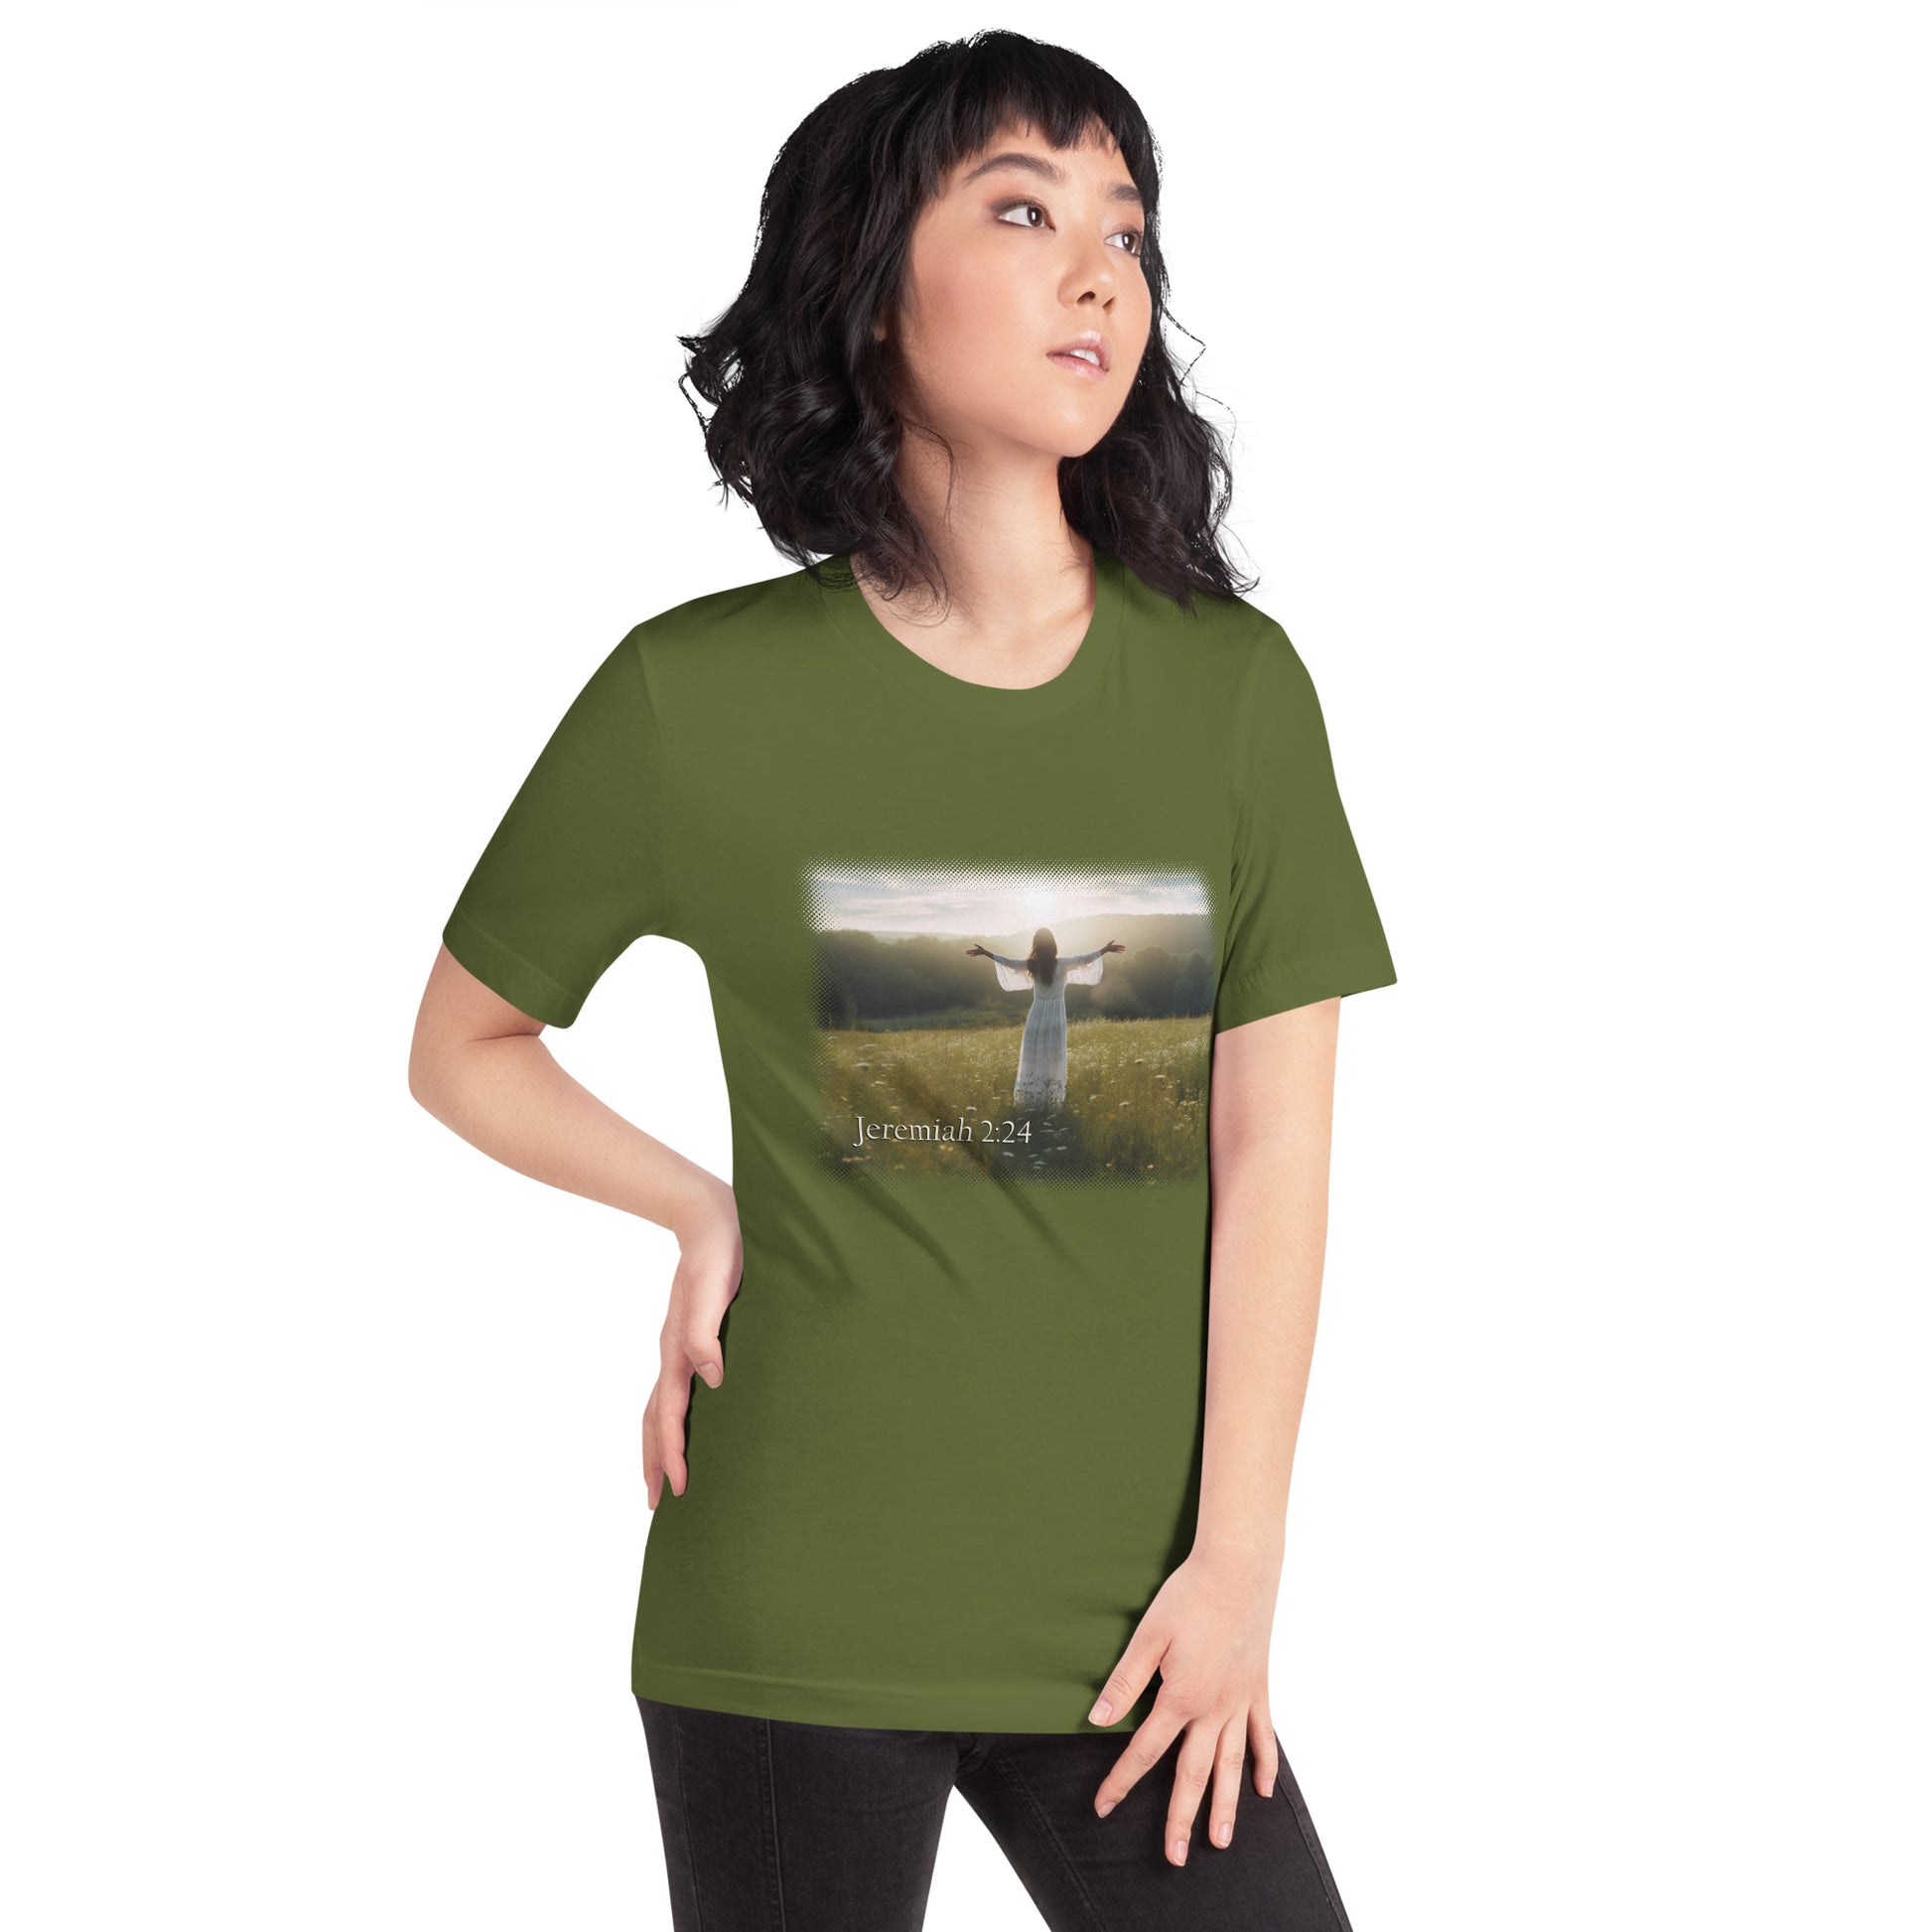 Jeremiah 2:24 Olive Short-Sleeve Unisex T-Shirt Mockup